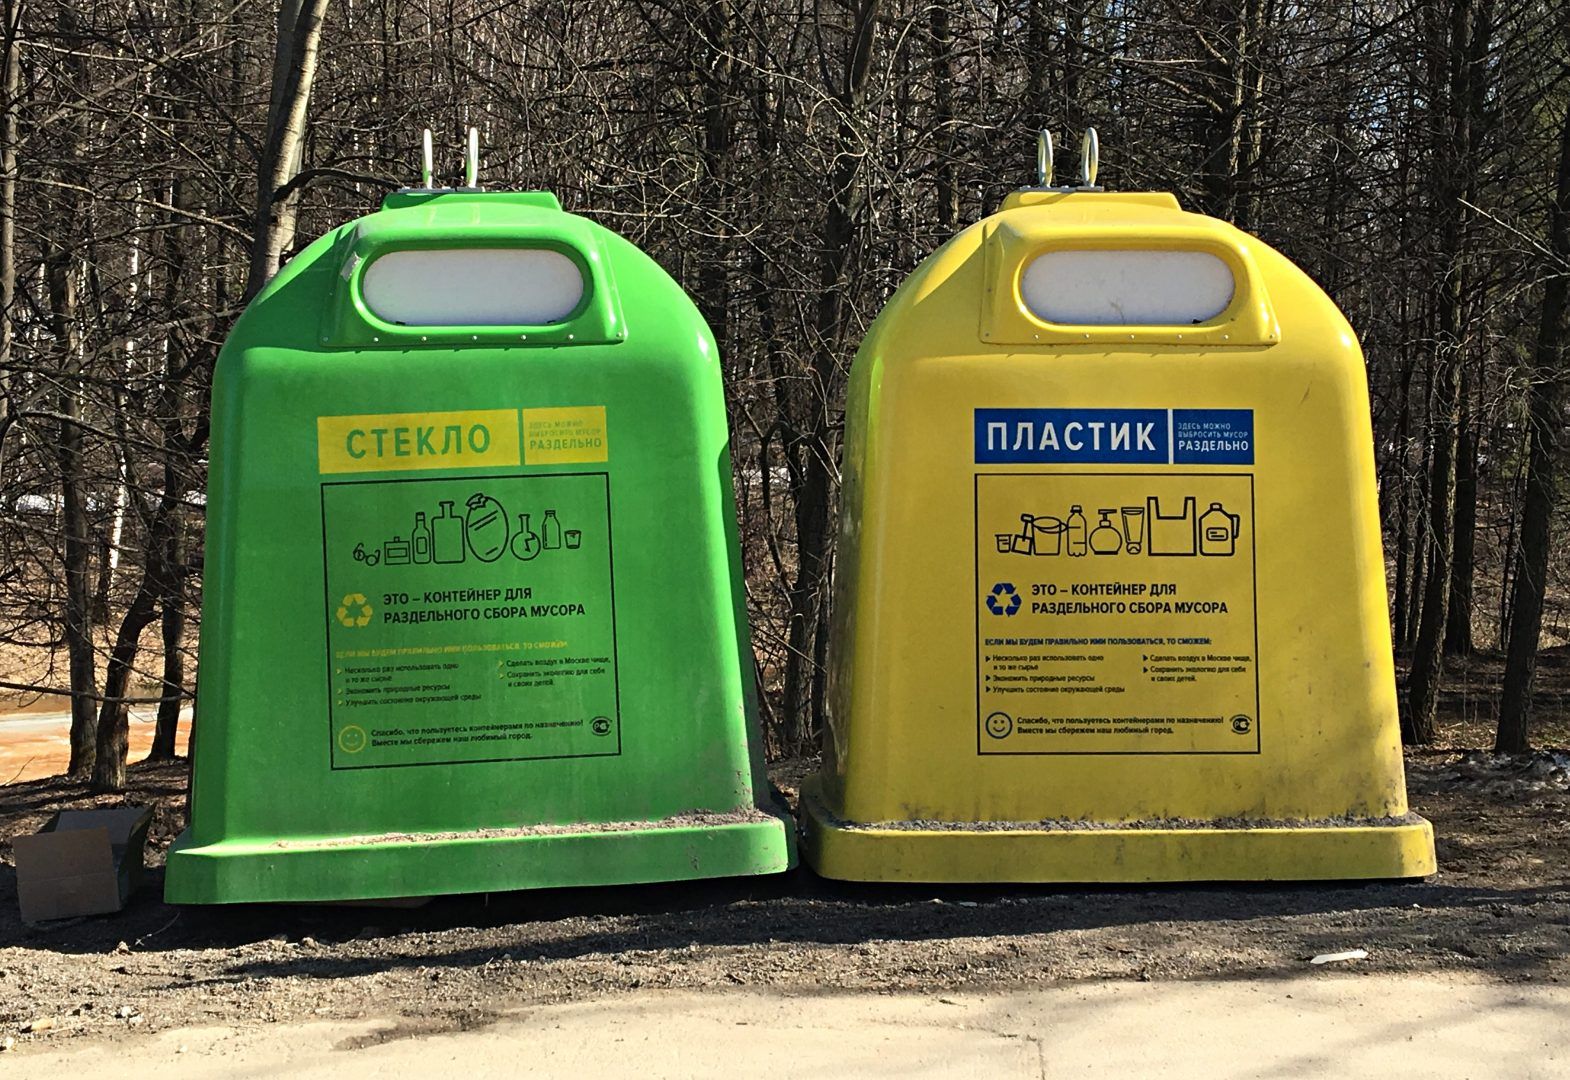 «Активный гражданин» определит готовность москвичей к сортировке отходов. Фото: архив